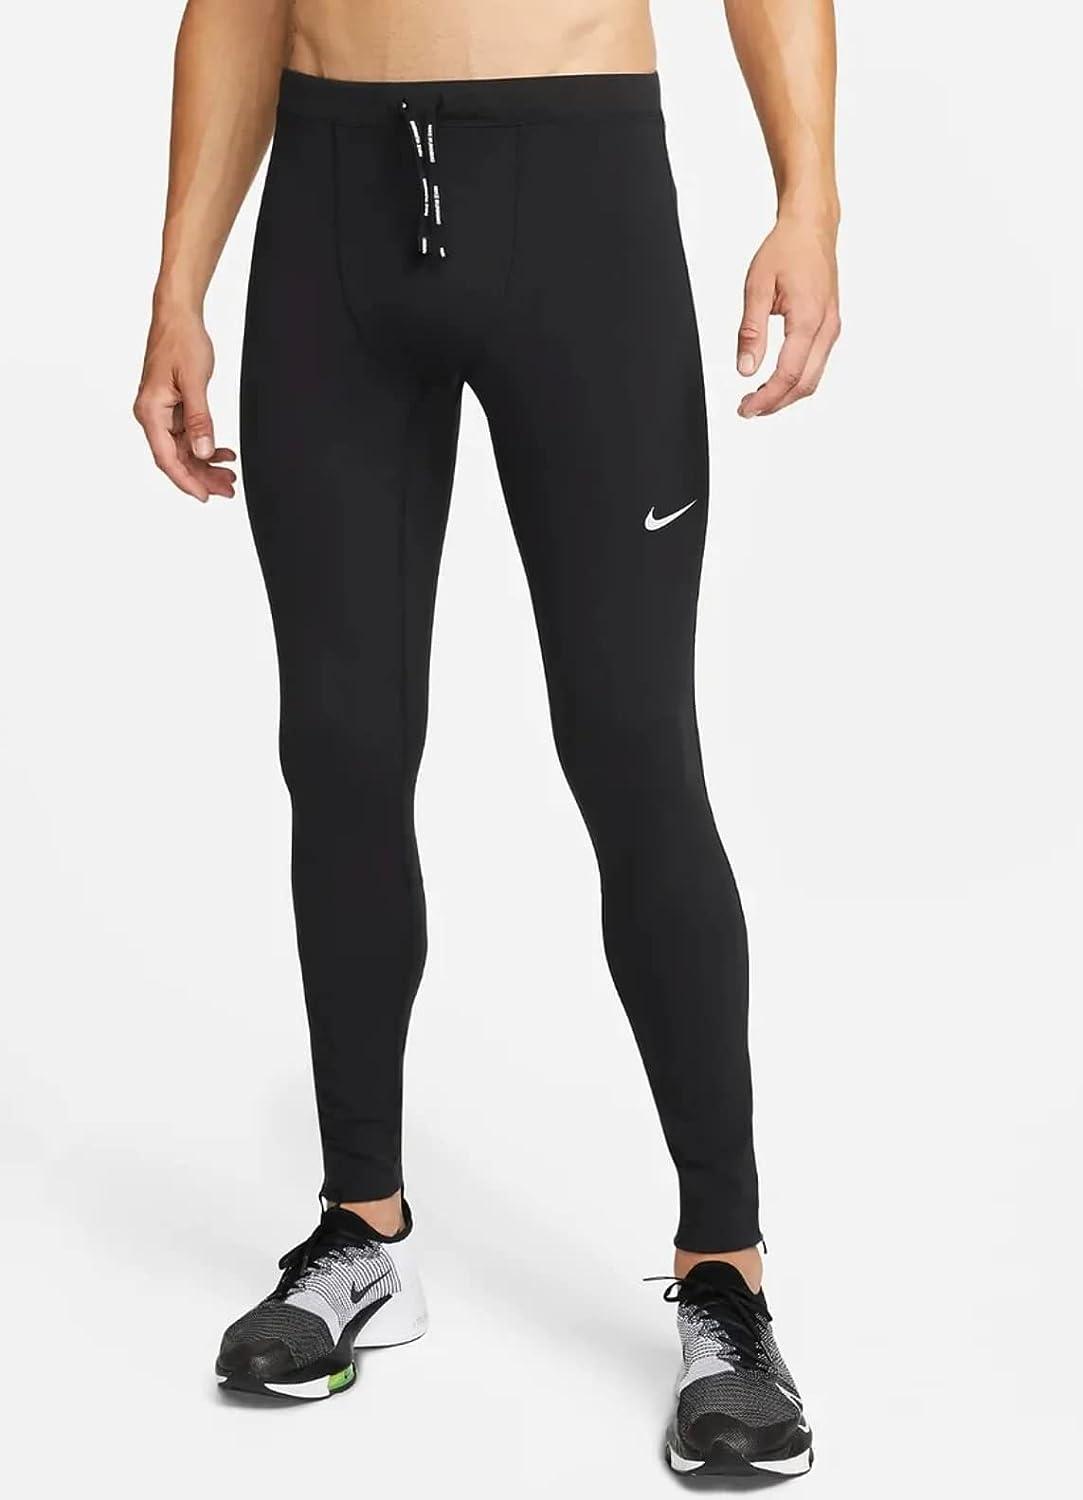 Nike Men's Repel Challenger Running Tights Leggings, Black, X-Large